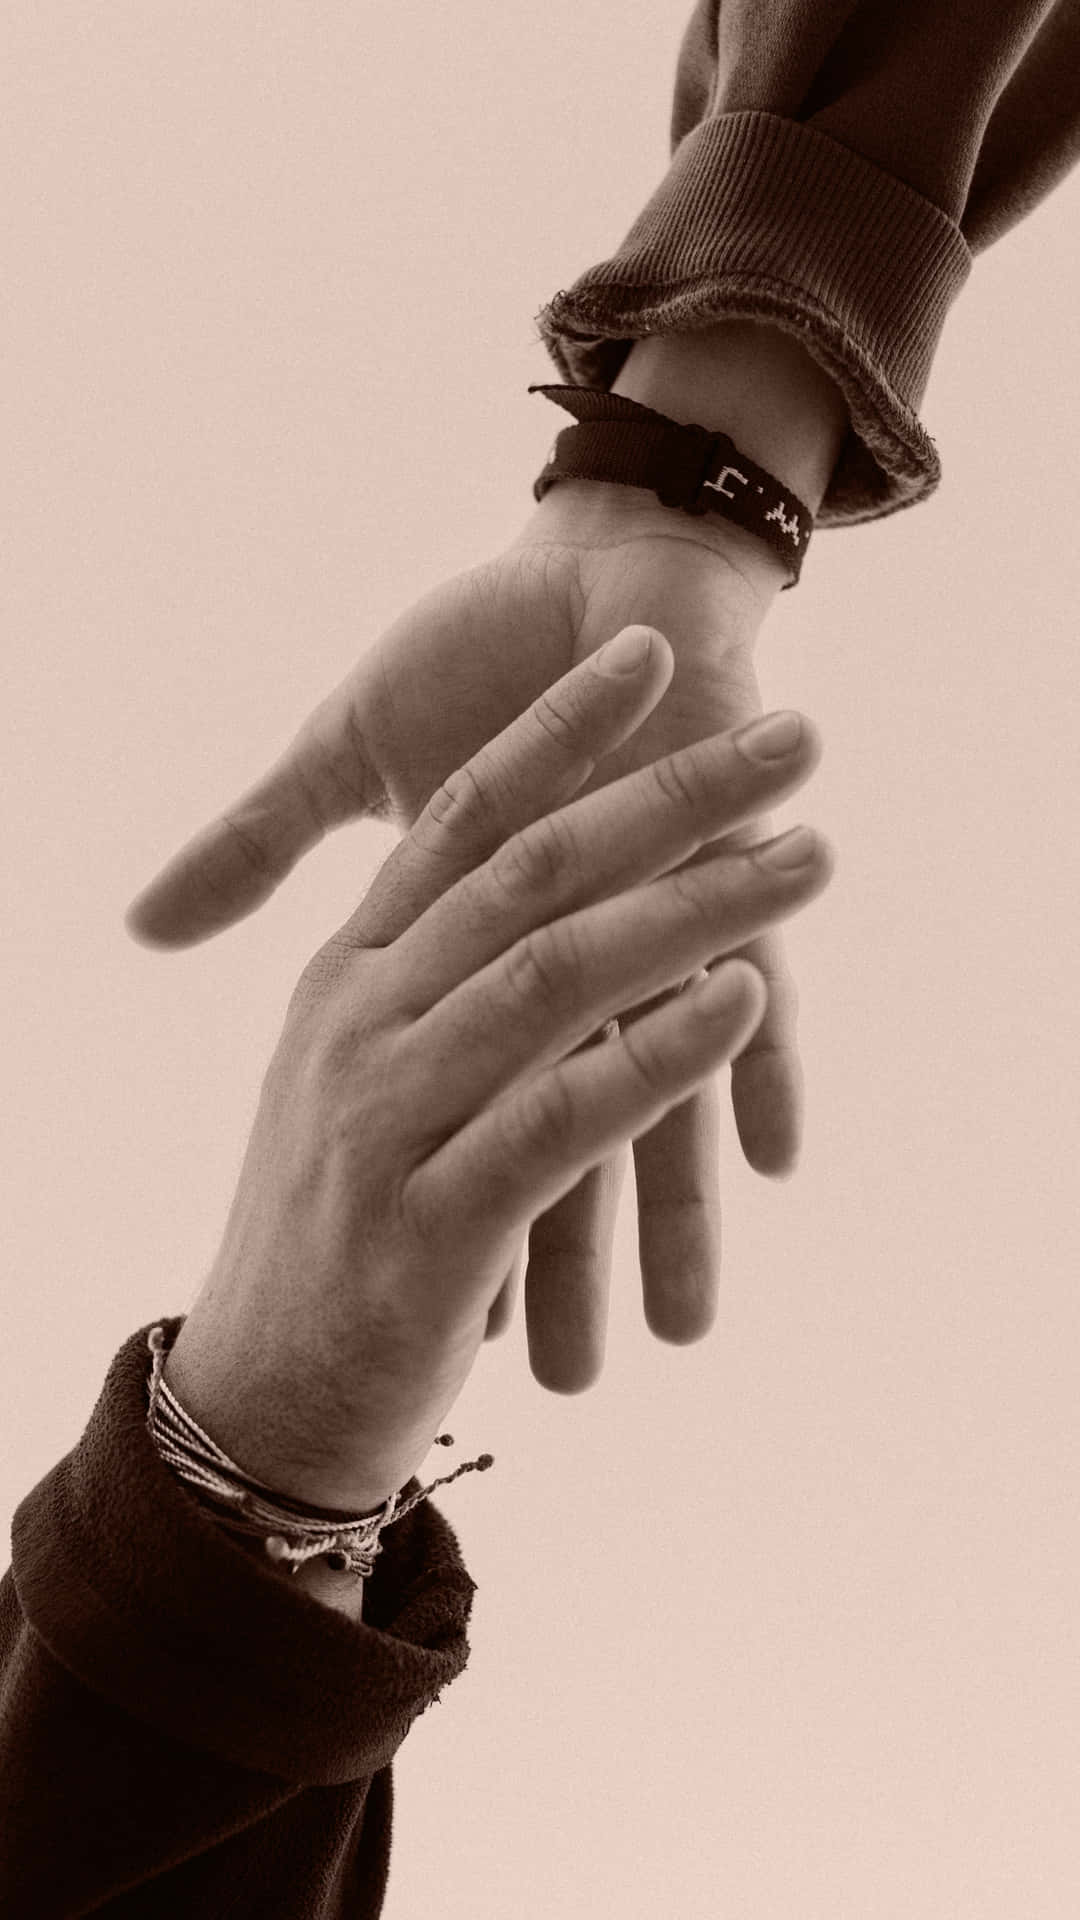 Gentle Handshake With Bracelets Wallpaper